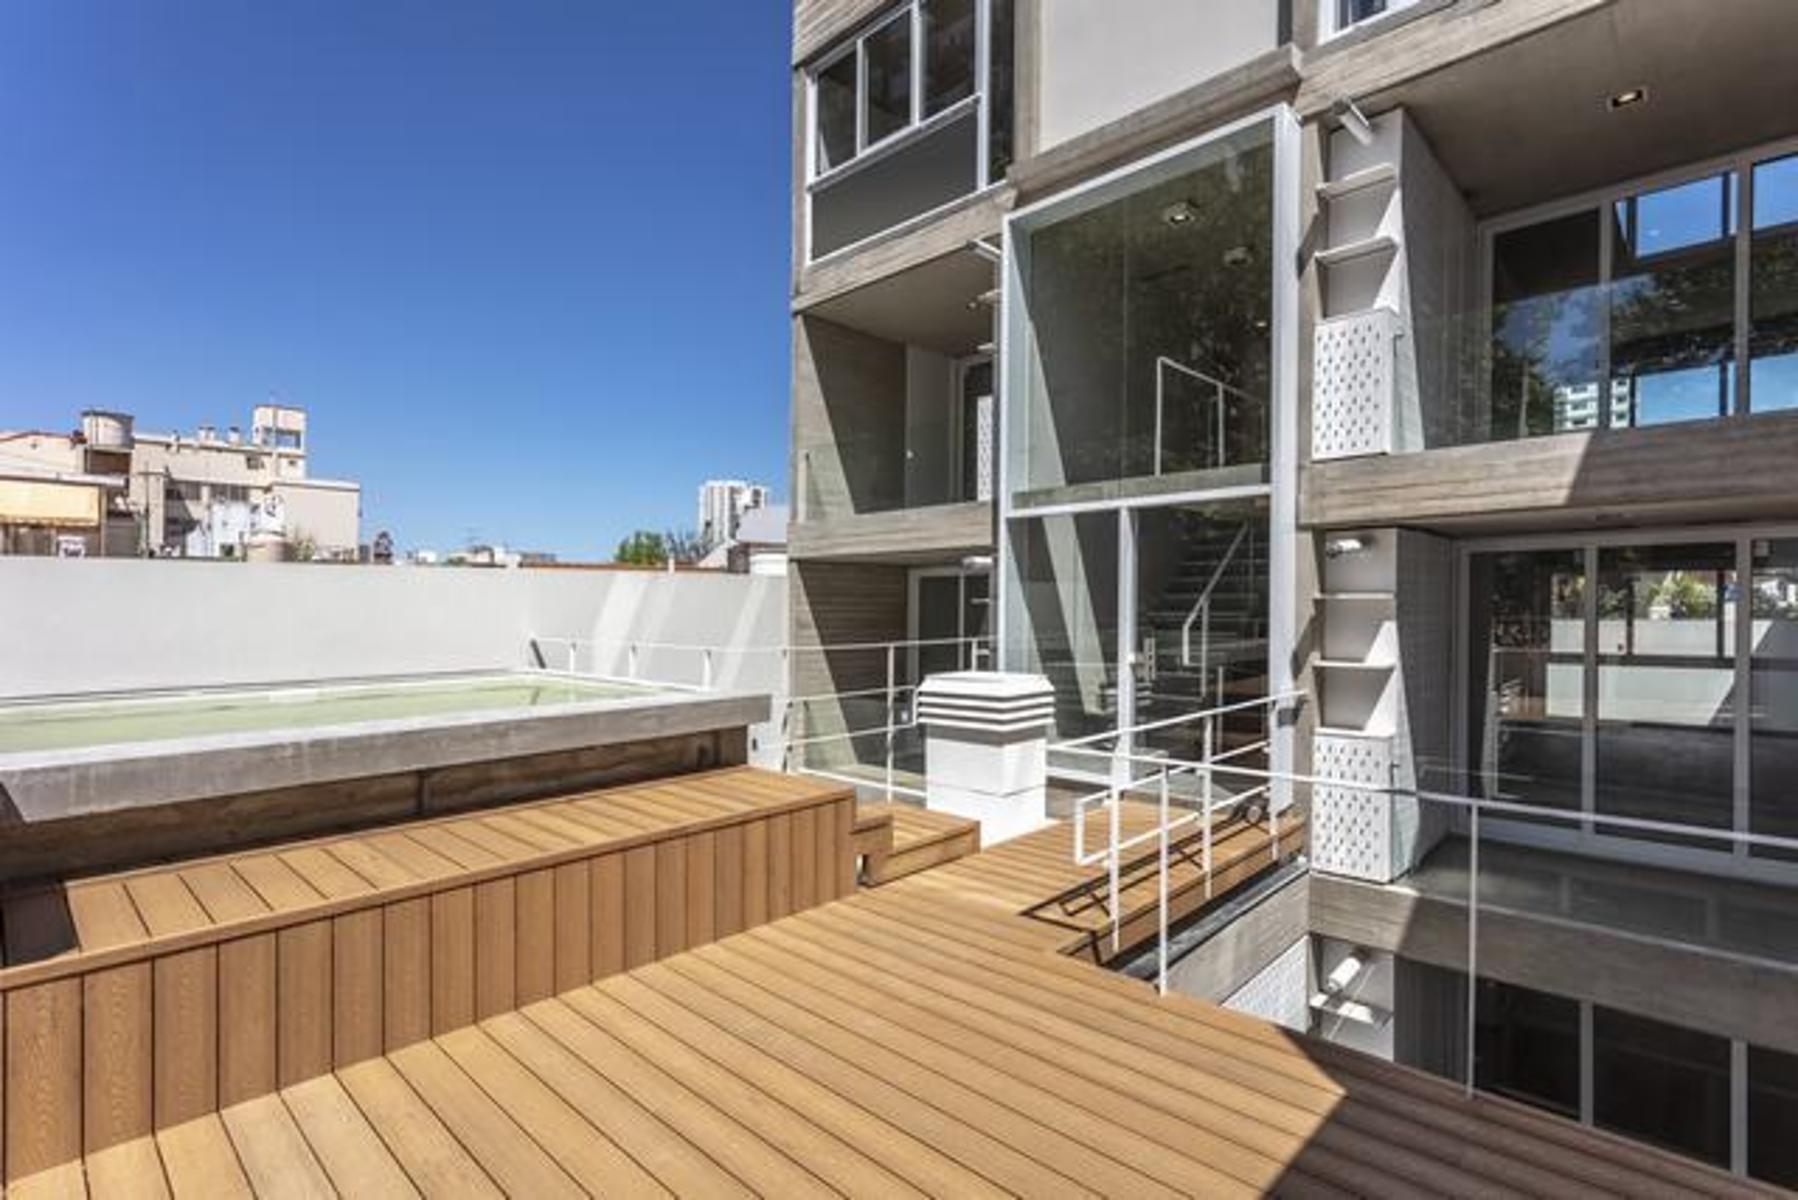 NUÑEZ, Excelente Monoambiente divisible c /balcón. Fte con fachada de época. Parrilla, solarium y pi